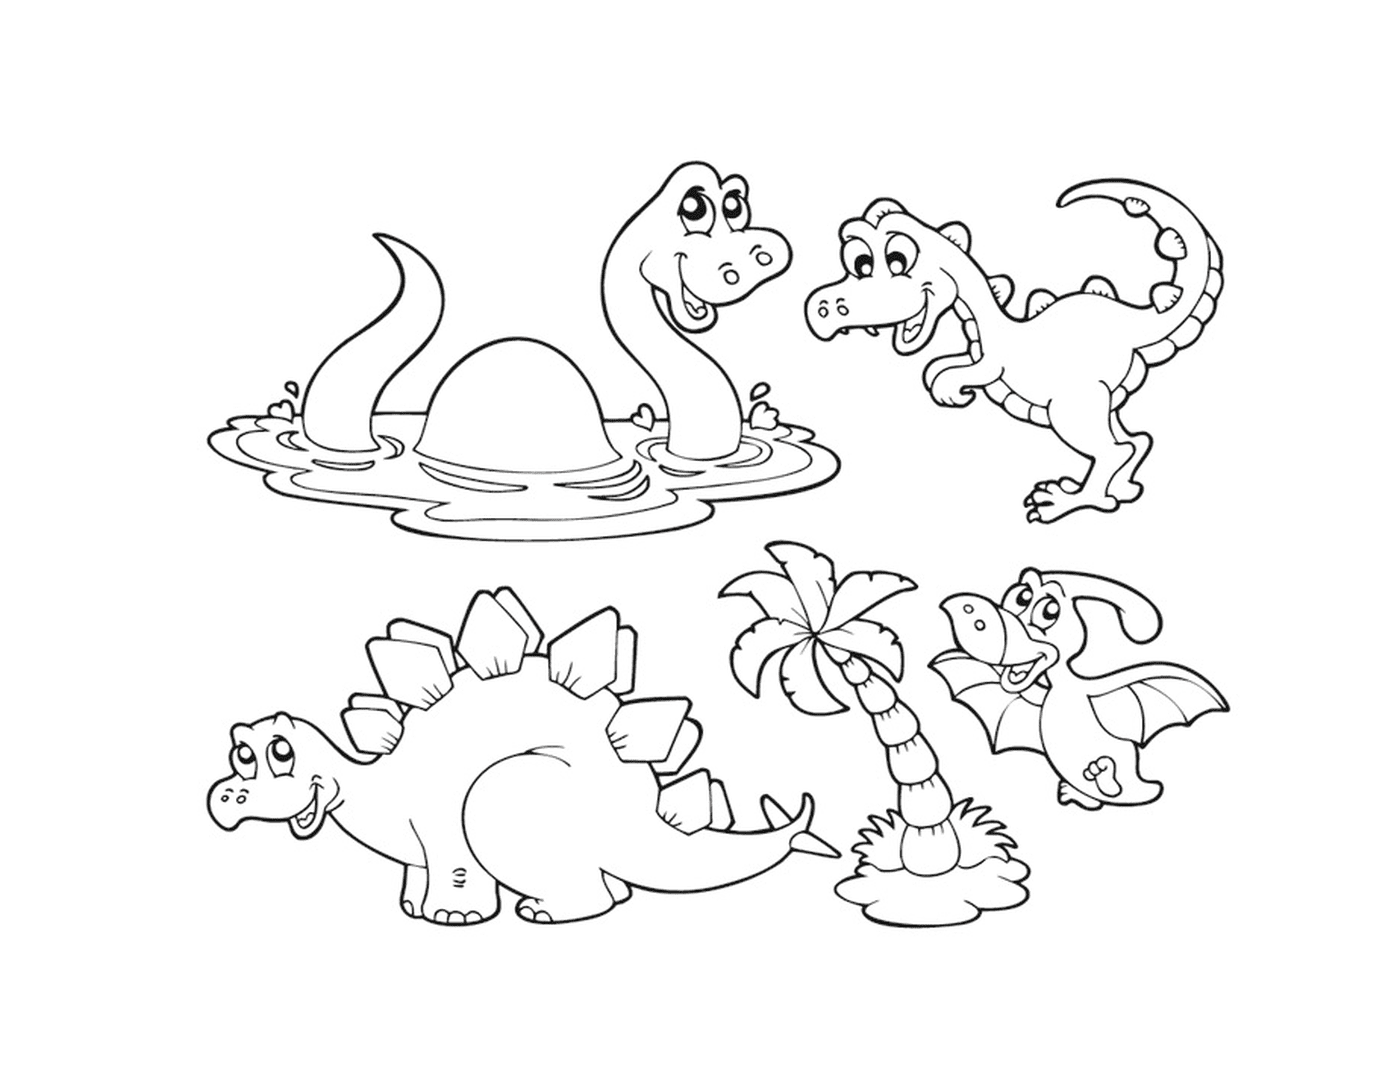  Eine Gruppe Dinosaurier, die im Wasser sitzen 